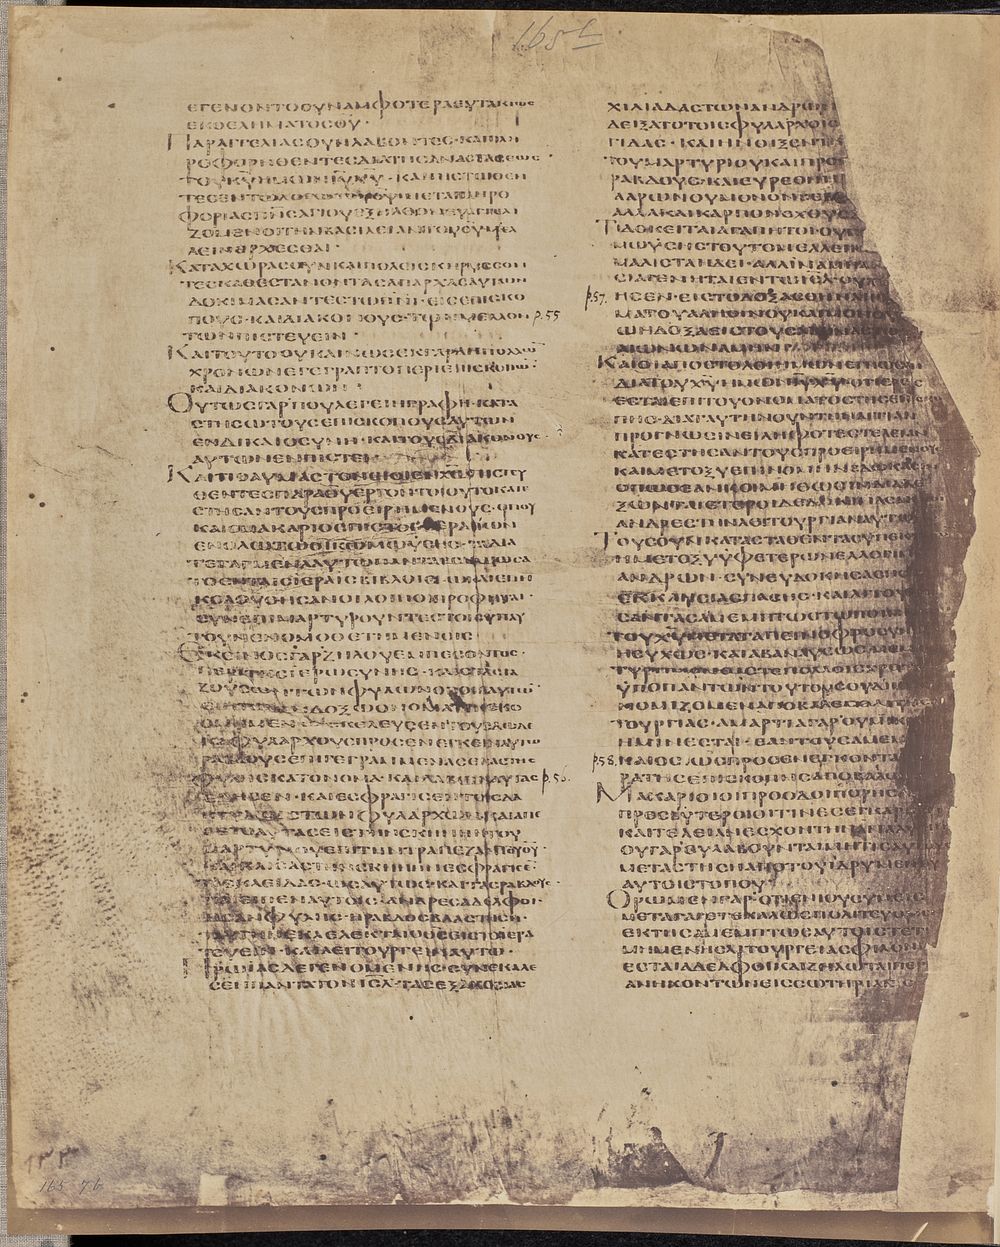 Folio 165, Verso by Roger Fenton